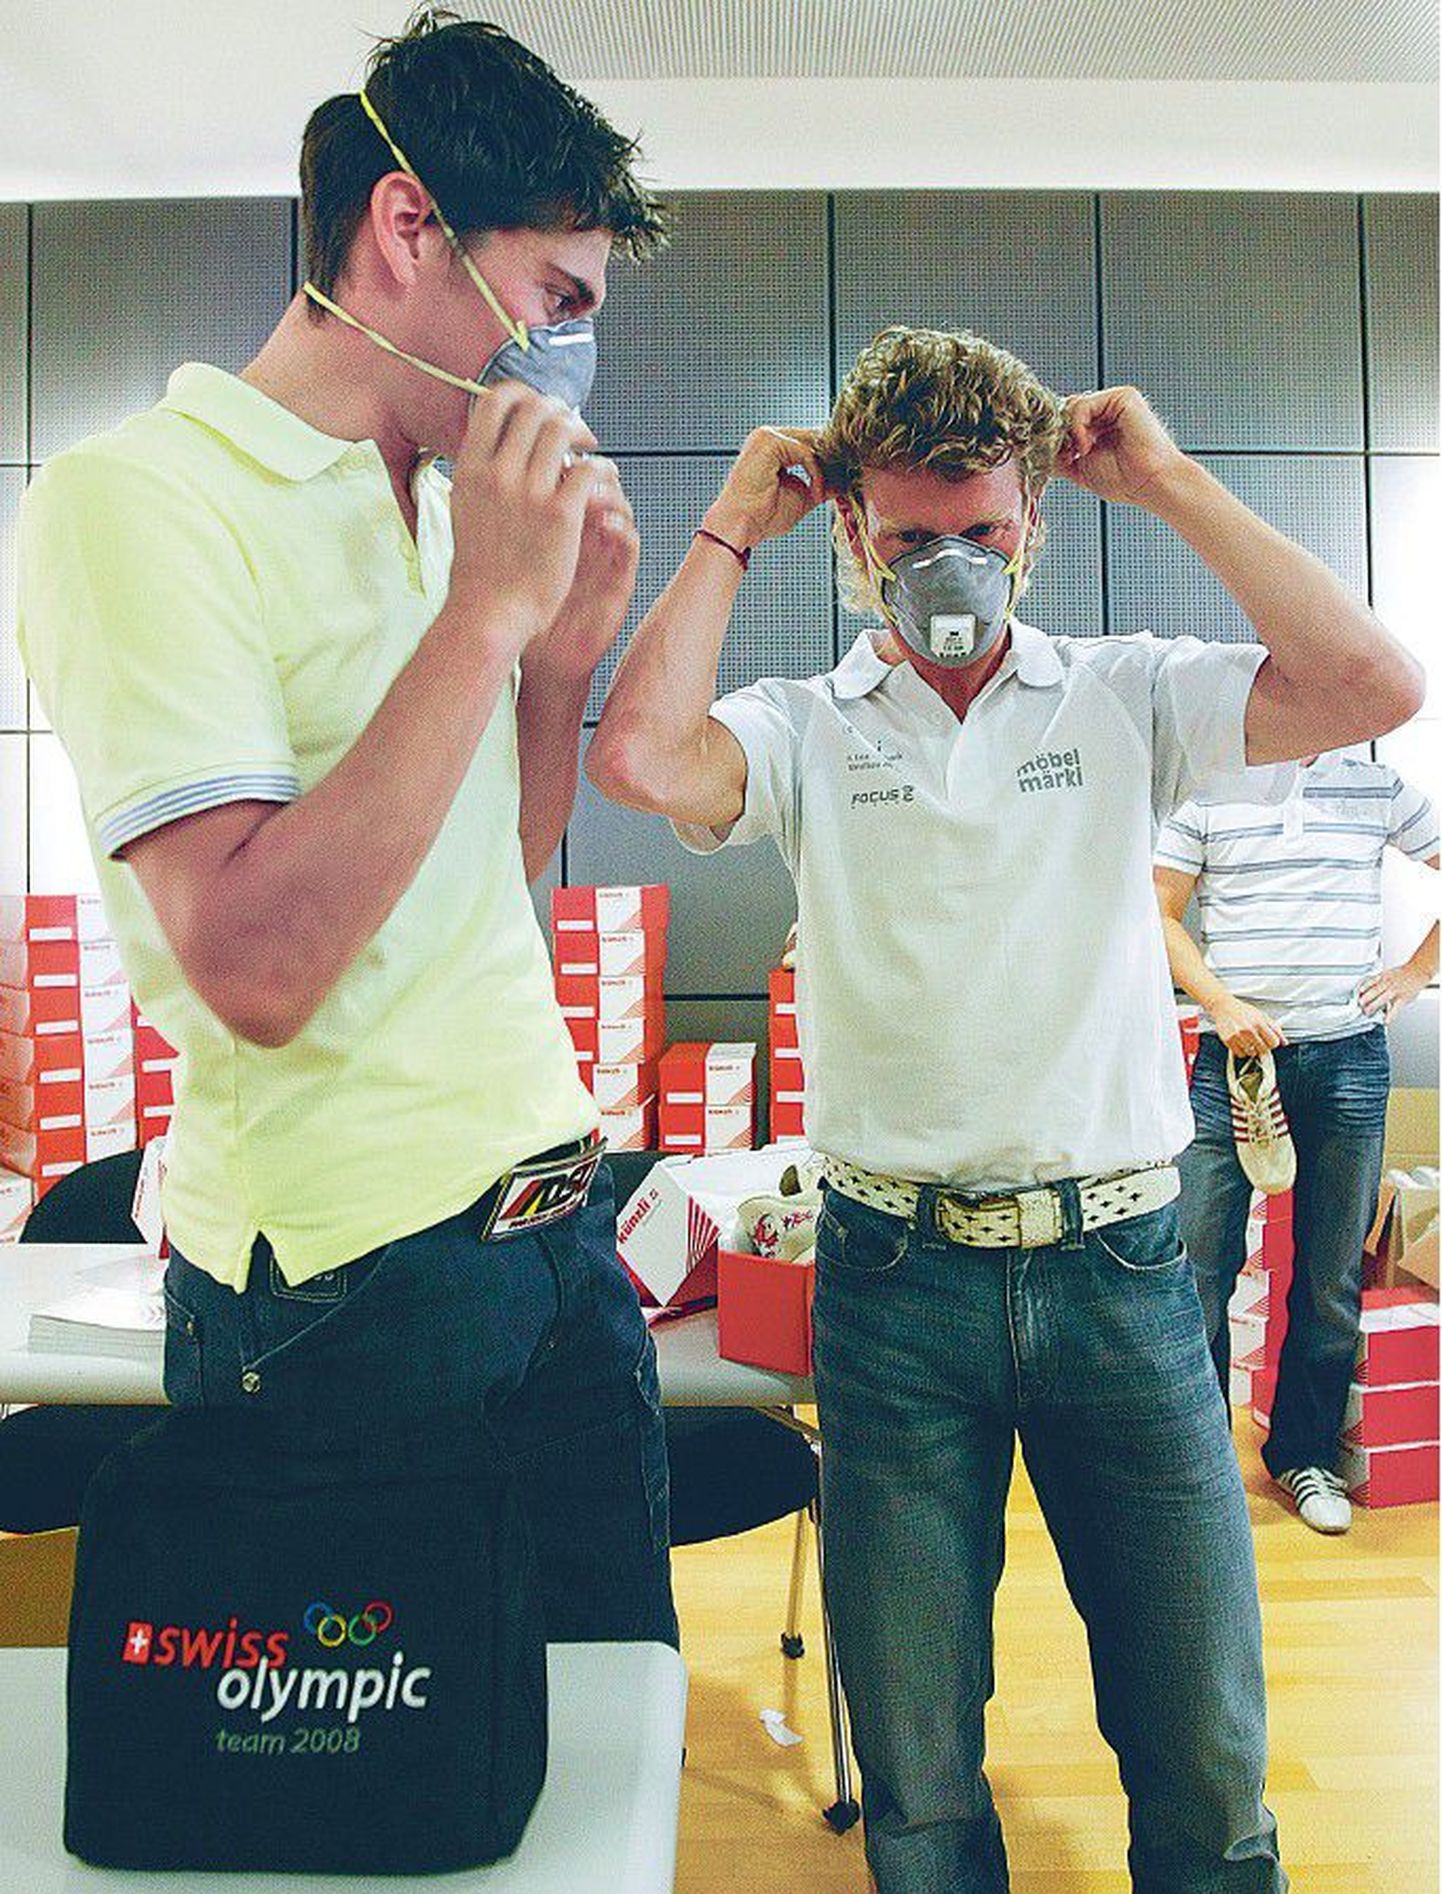 Õhusaaste vastased maskid kuulusid ka Šveitsi olümpiakoondislaste varustusse. Pildil proovivad maske ratturid Bruno Risi (vasakul) ja Franco Marvulli.